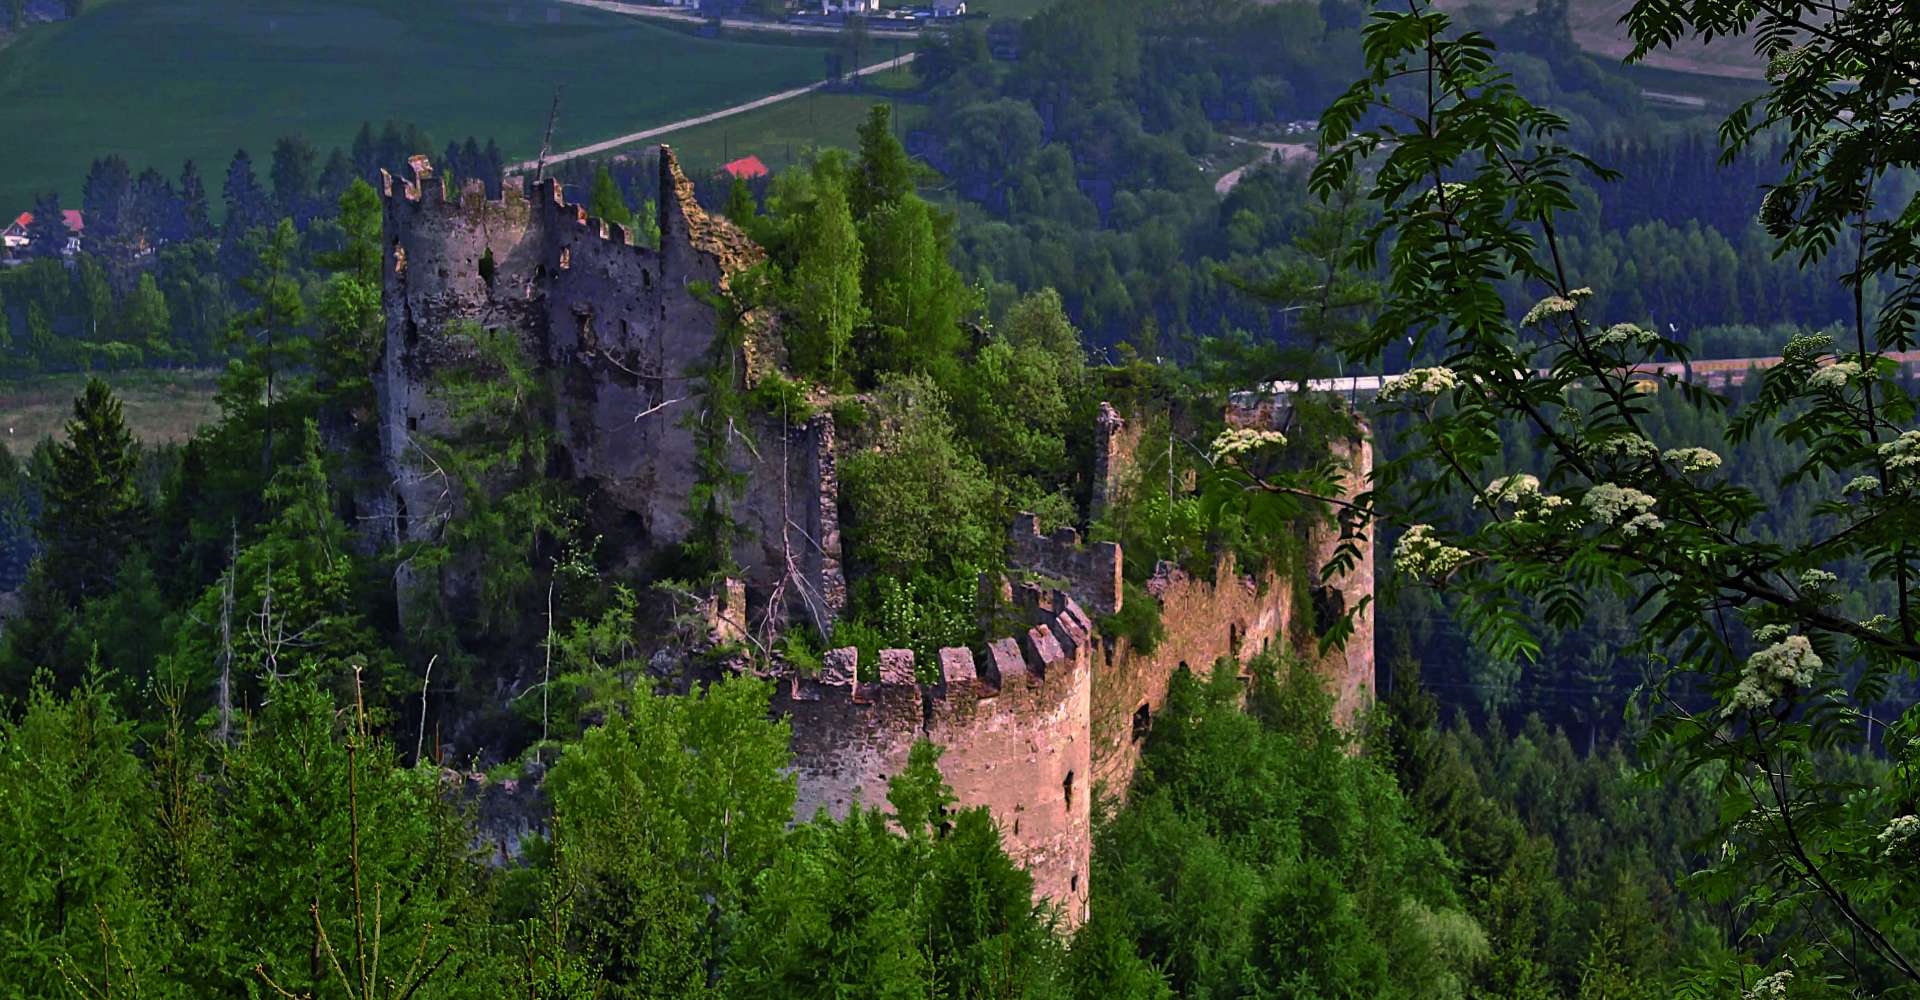 <p>Von der geschichtsträchtigen Ruine Reifenstein zur Sauerbrunnquelle bei Schloss Thalheim</p> 